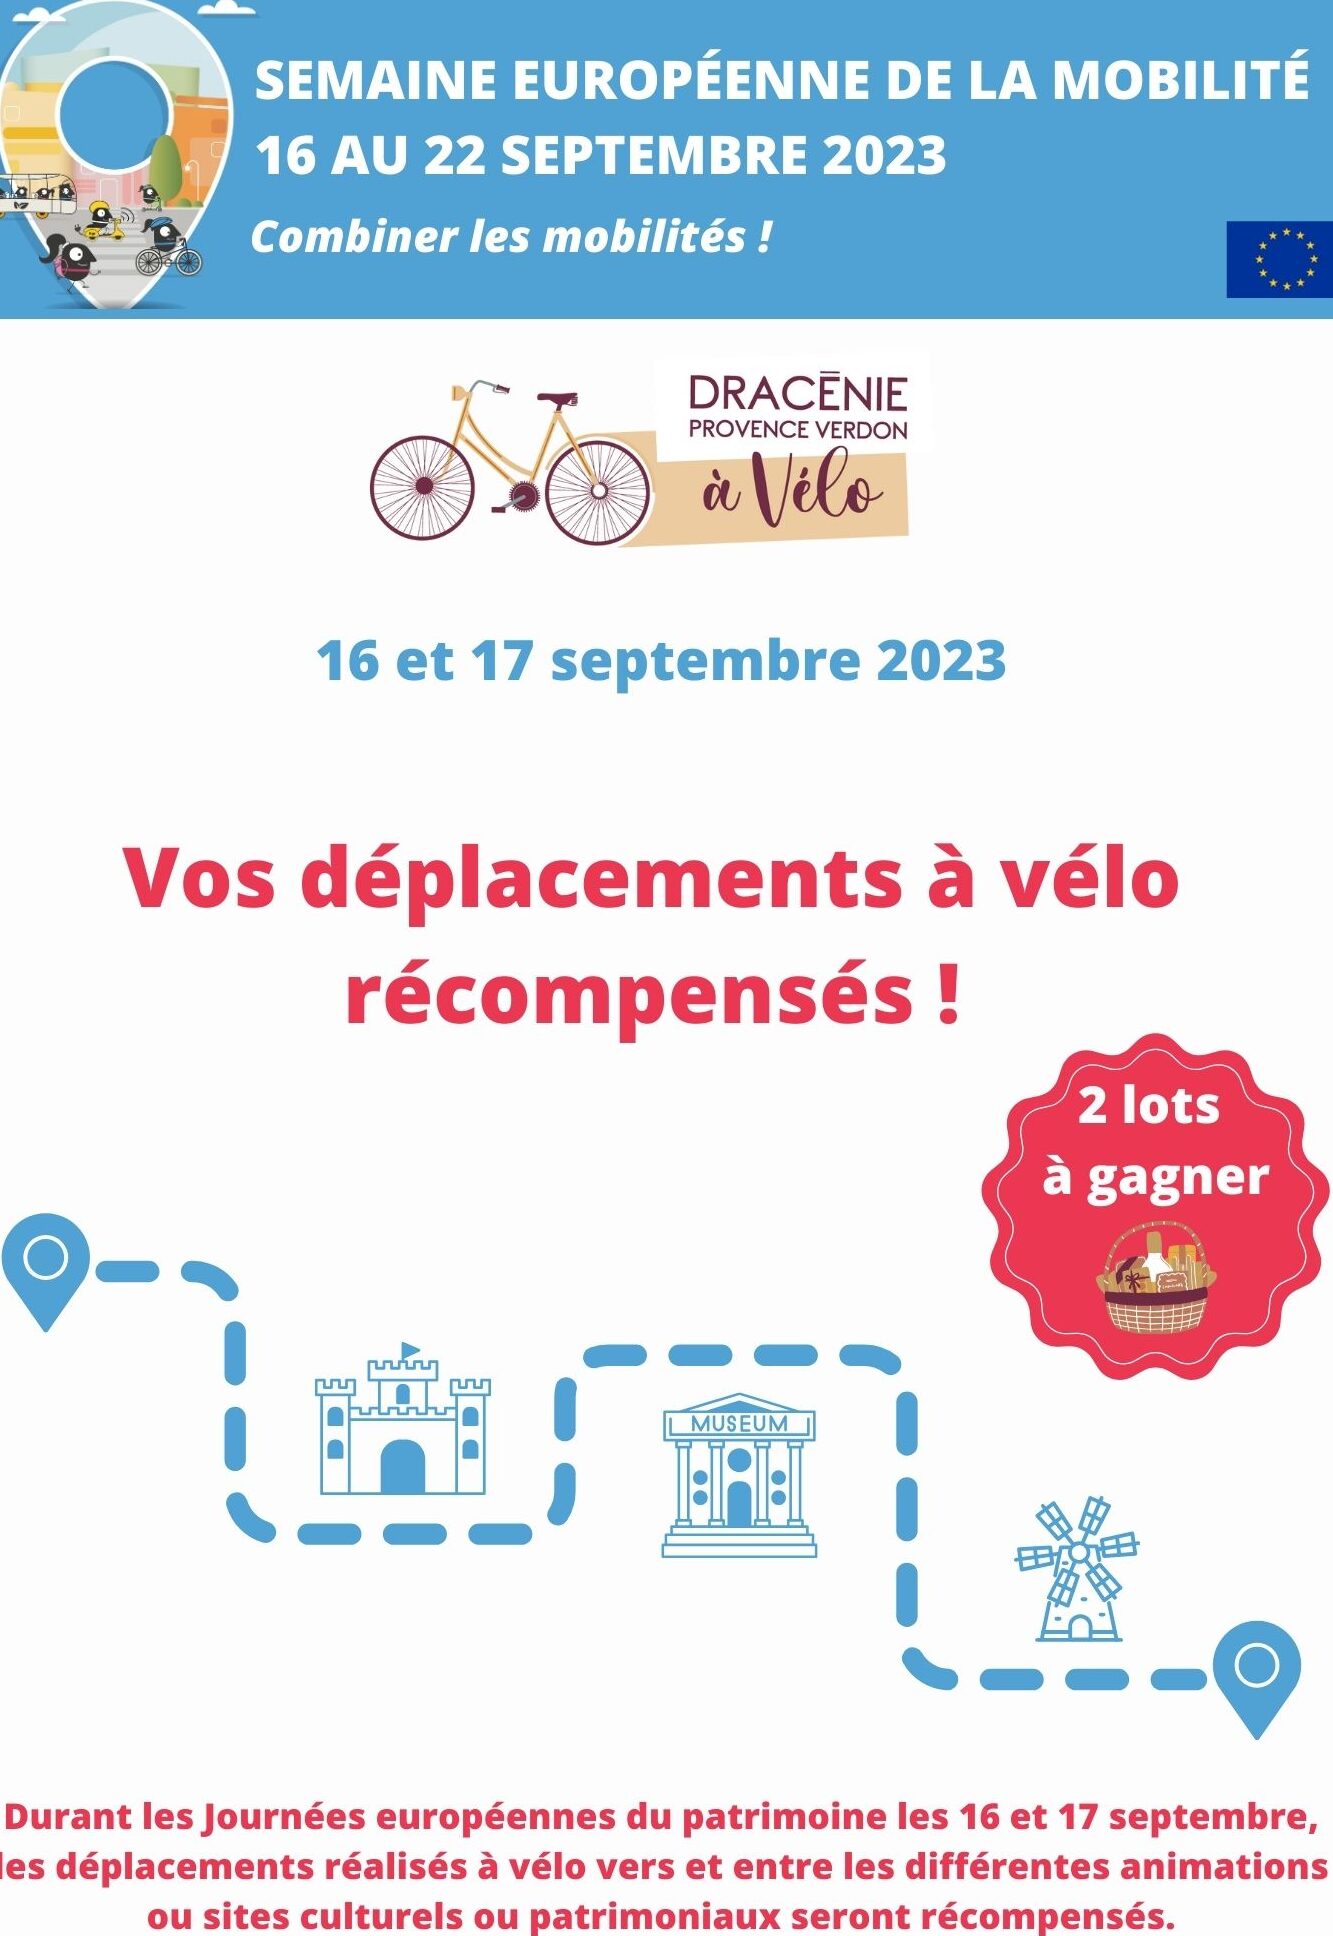 Tous à vélo pour les journées européennes du patrimoine les 16 et 17 septembre !!